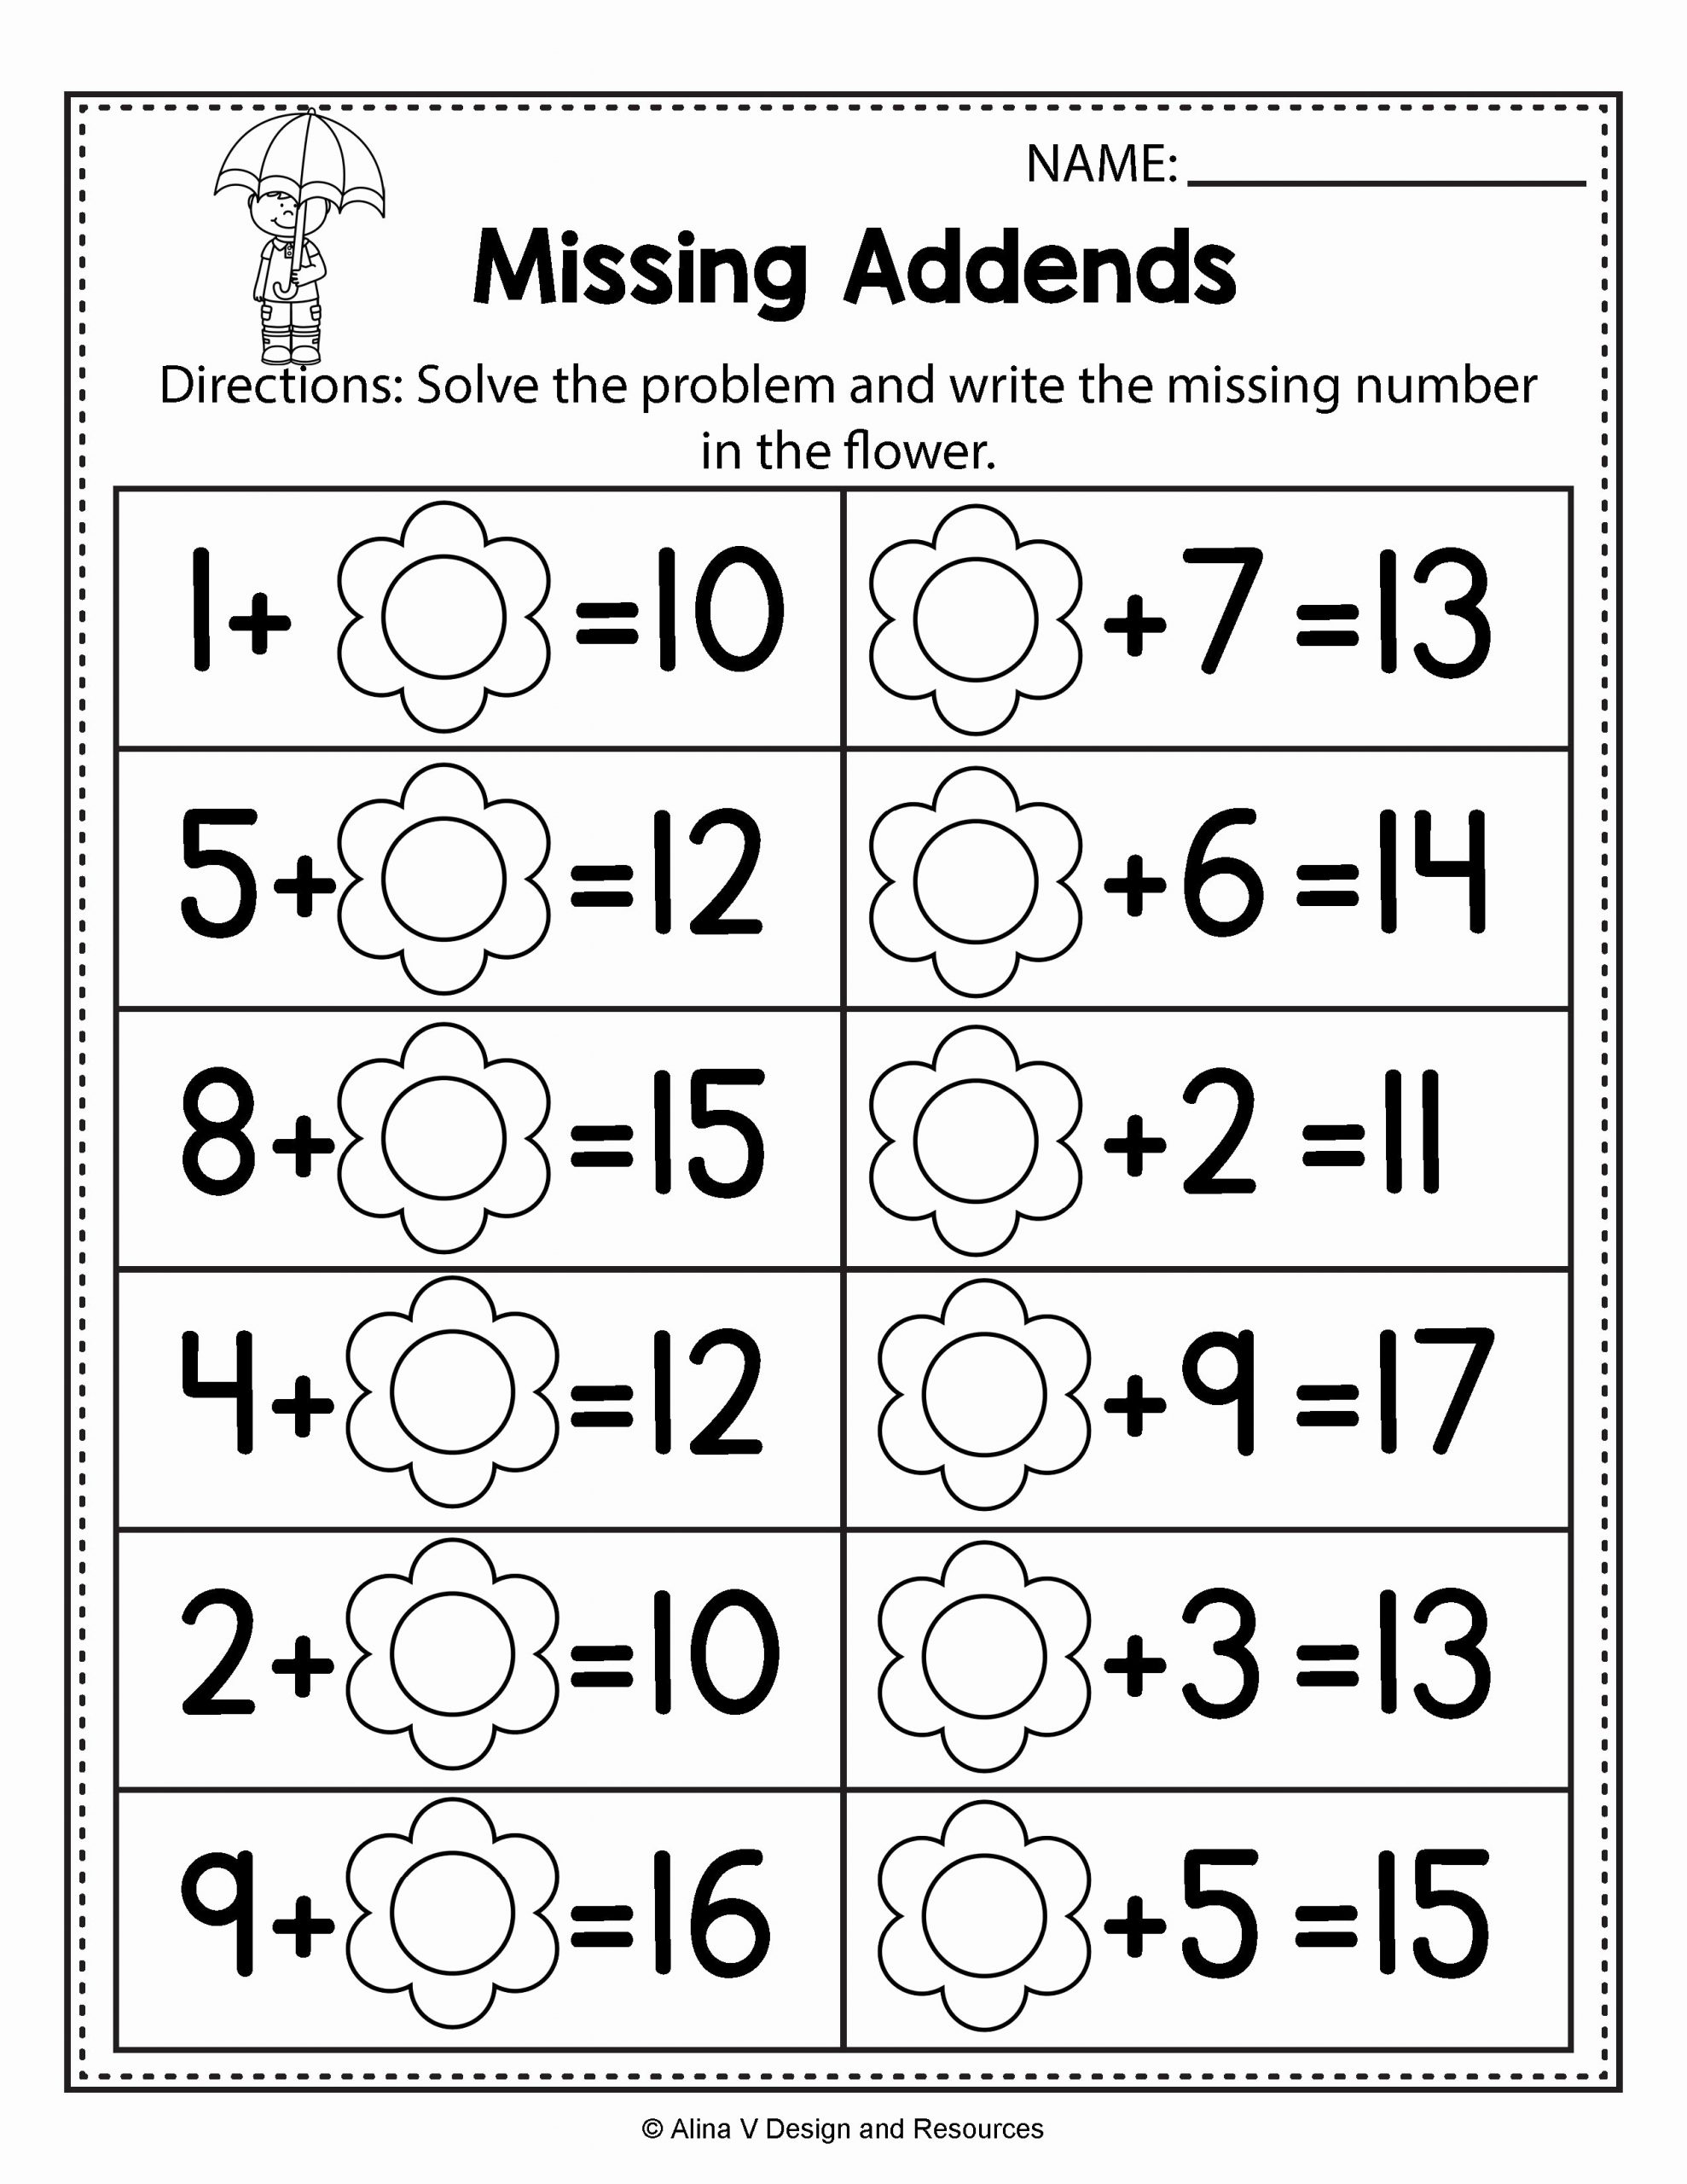 Missing Addend Worksheets Kindergarten Lovely Free Missing Addend Worksheets 1st Grade Free